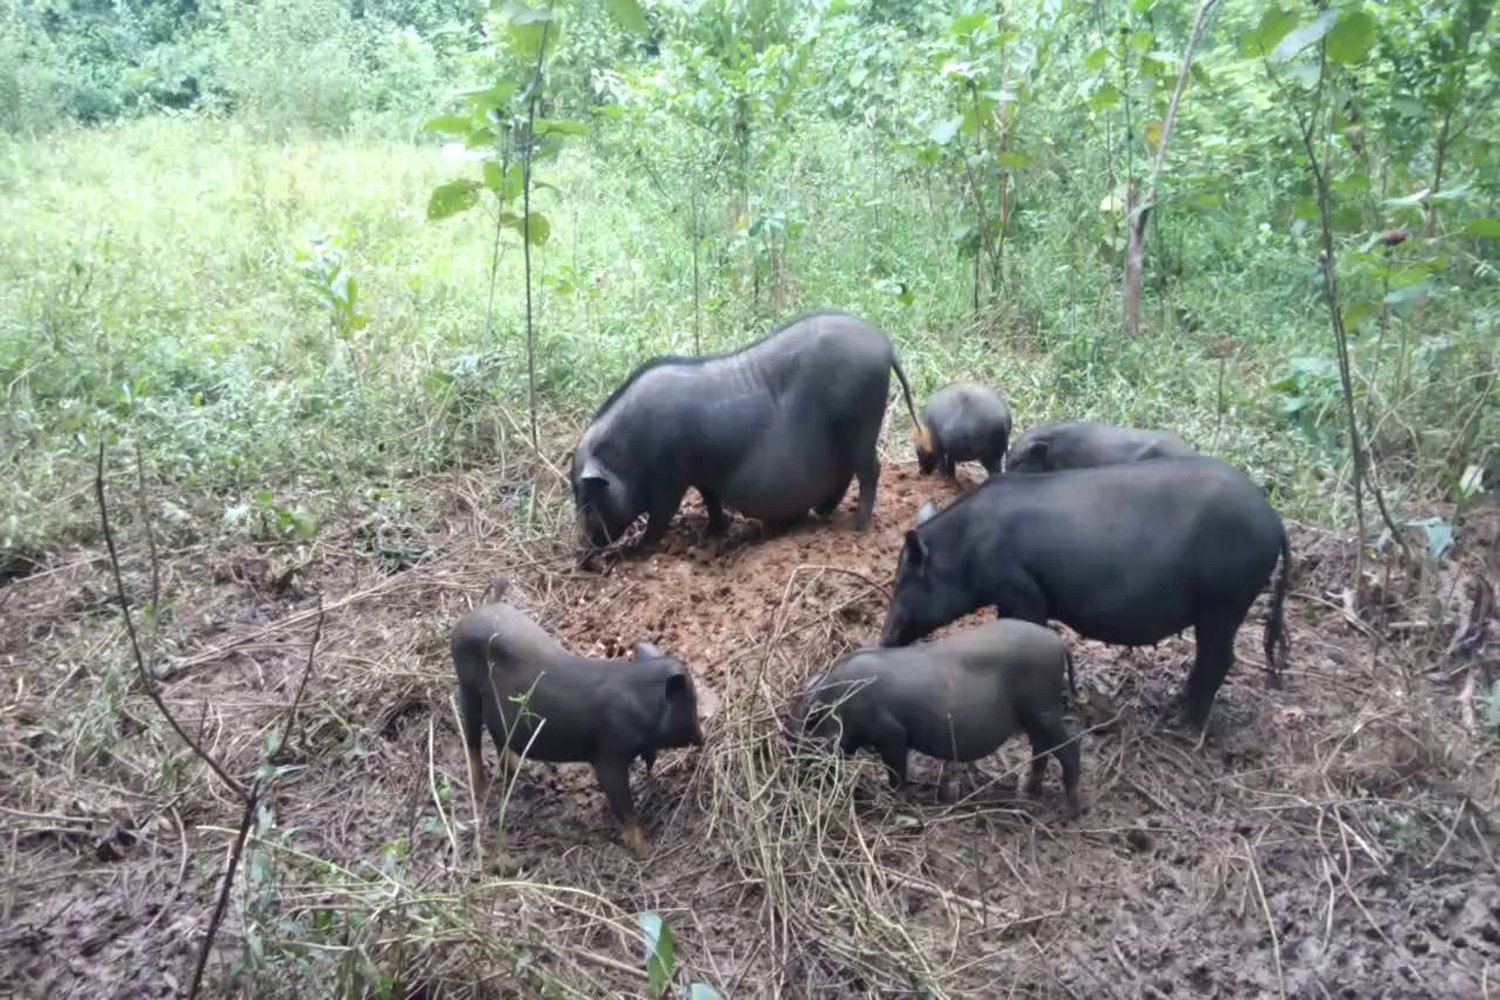 Thịt lợn cắp nách - Loại thịt rừng nhân tạo được tín đồ ẩm thực săn lùng